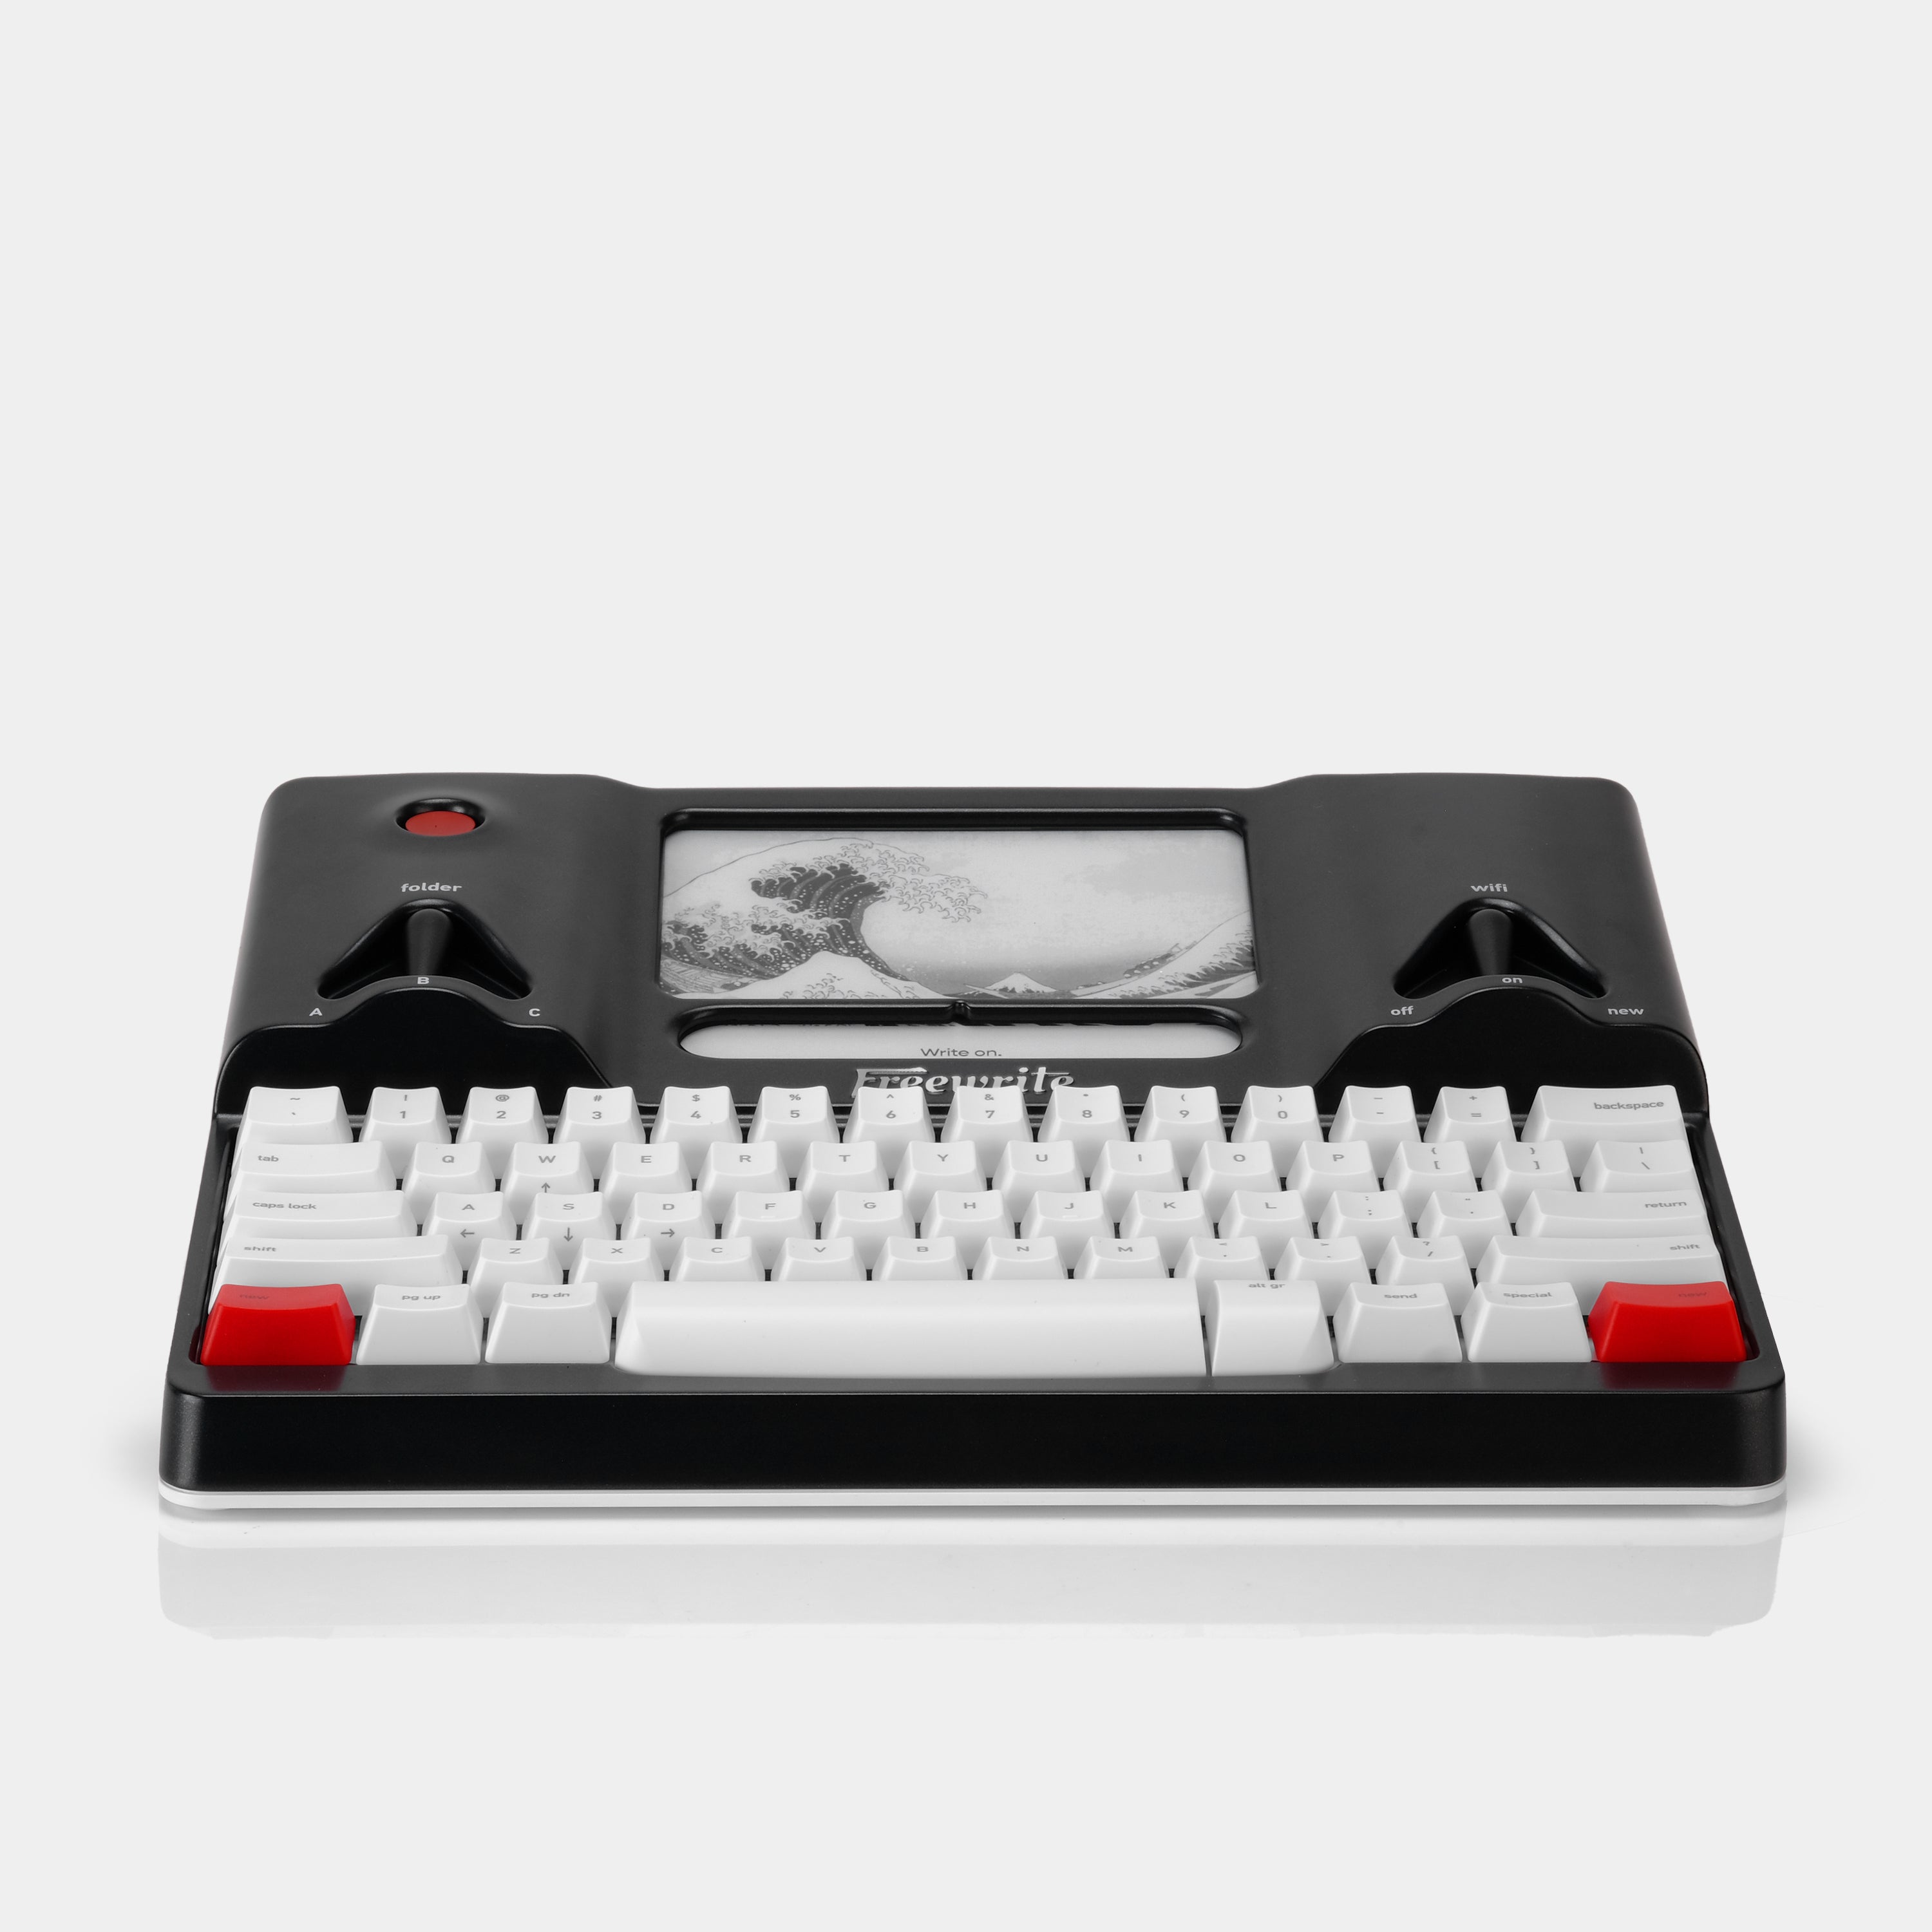 Freewrite Smart Typewriter (Gen 3)